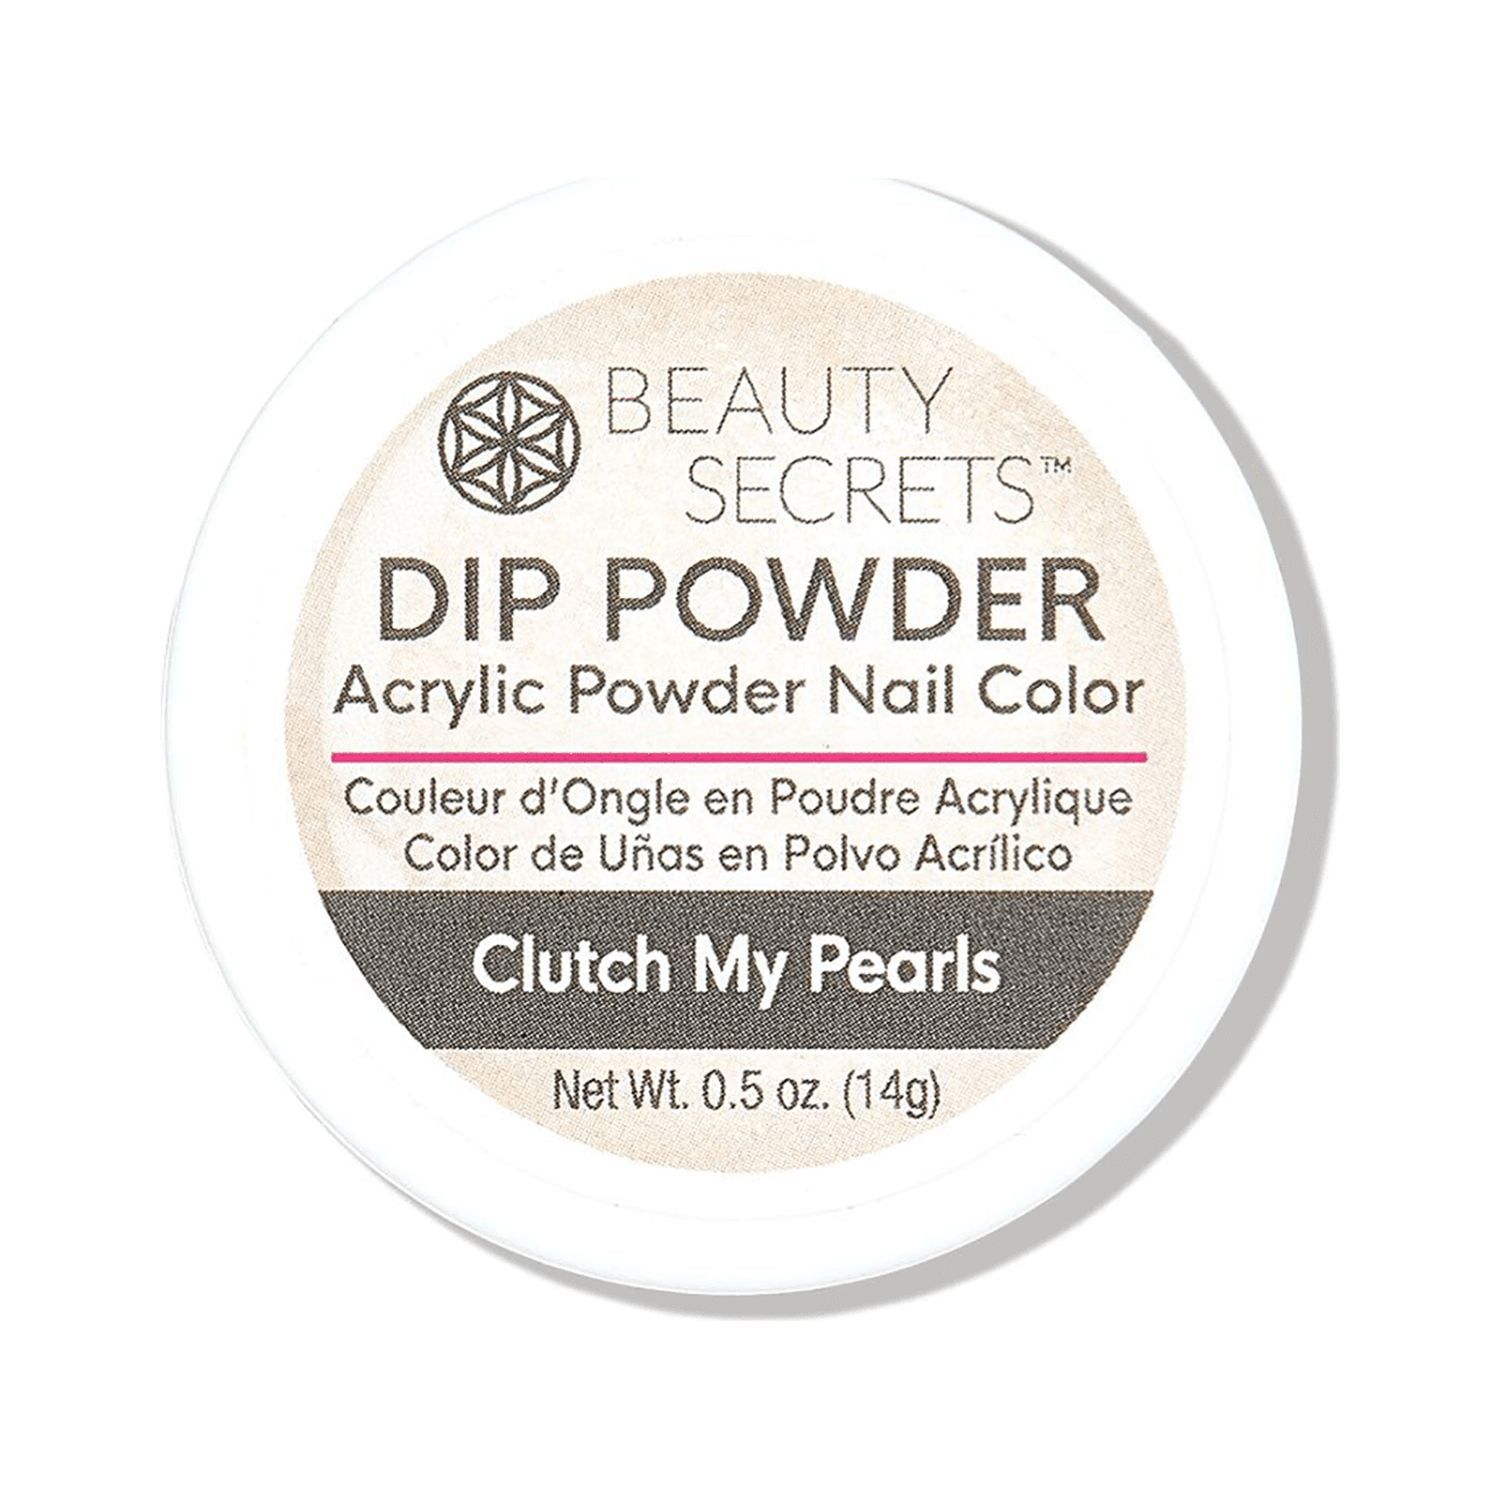 Beauty Secrets I Only Wear Black Dip Powder .5 Ounce